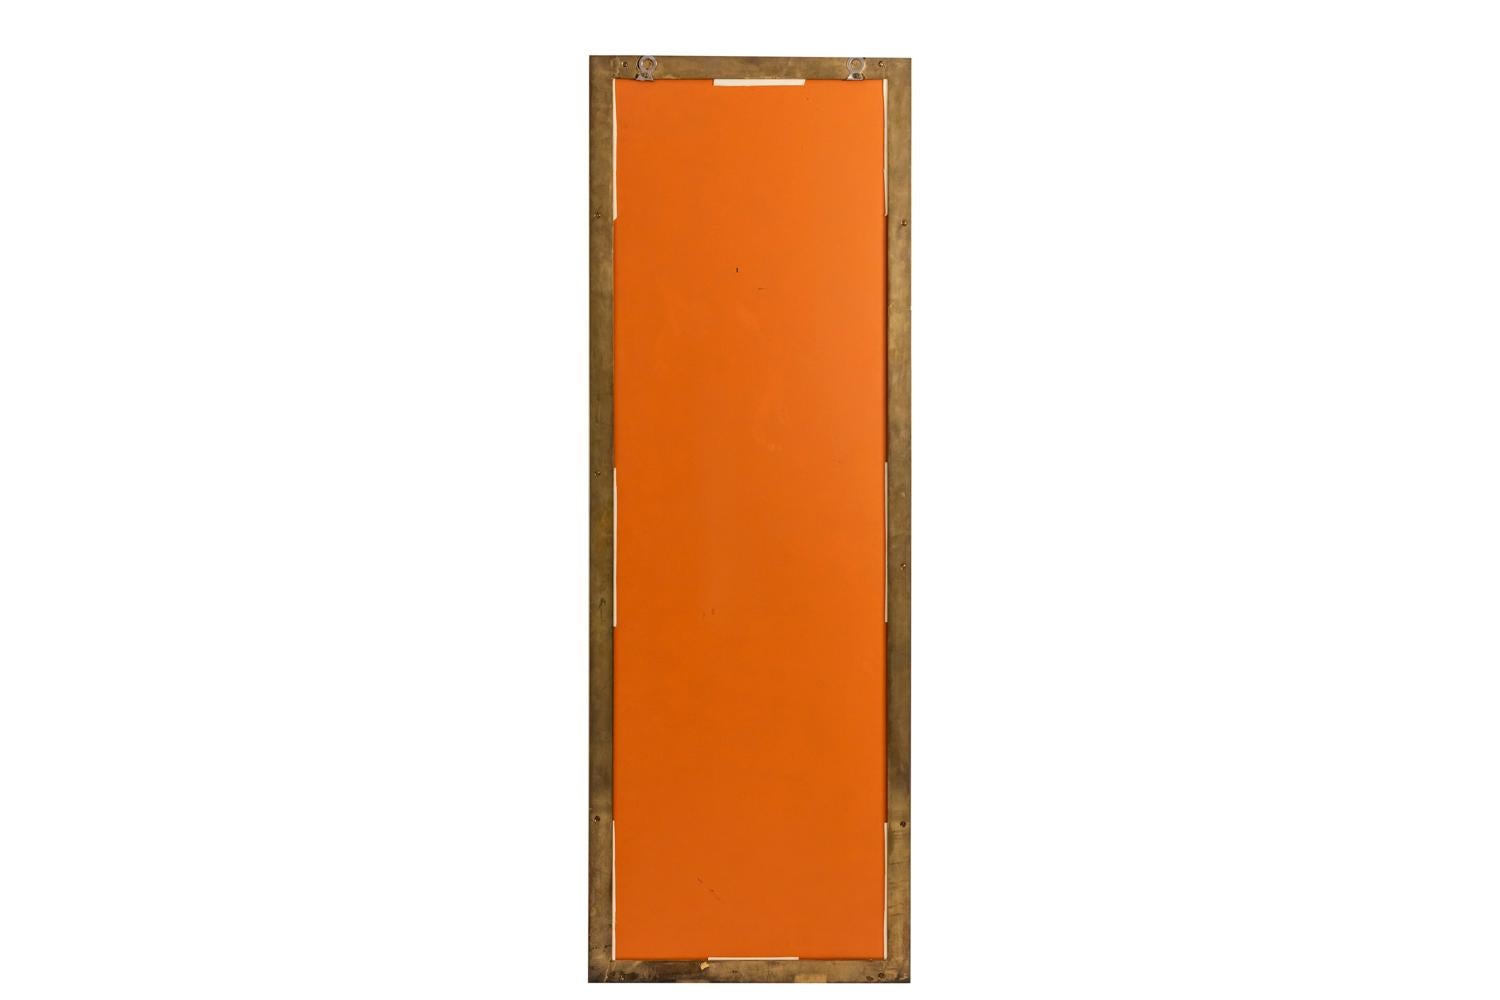 Länglicher, rechteckiger Spiegel mit stilisiertem Bambusmotiv aus vergoldetem Messing.

Das Werk wurde in den 1970er Jahren realisiert.

Aktenzeichen: LS4549271